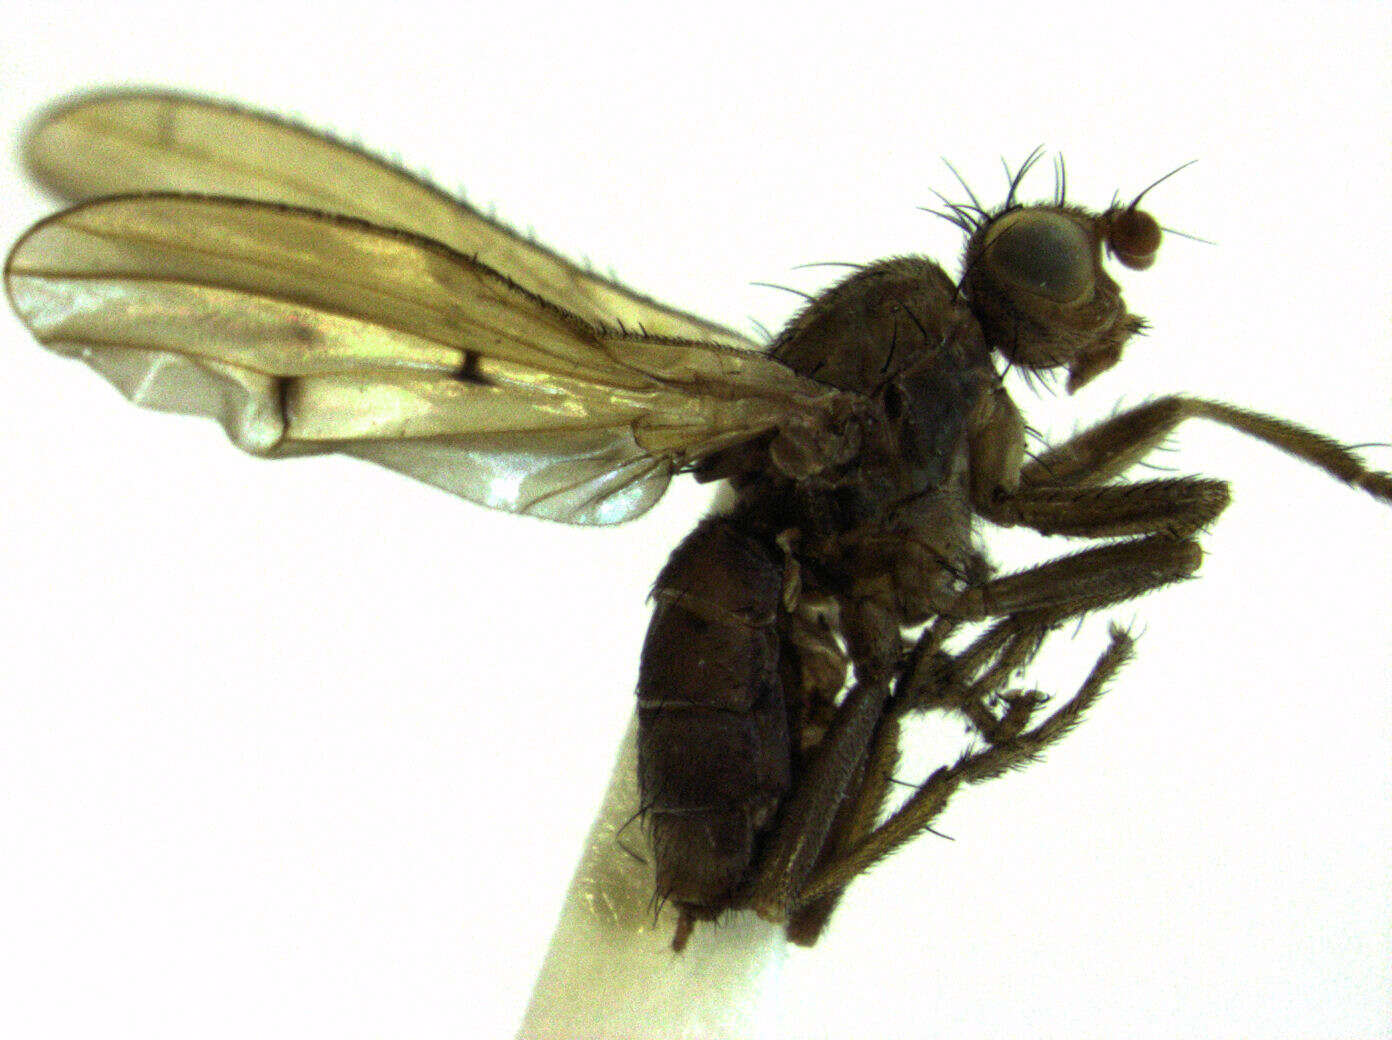 Image of Helosciomyzidae